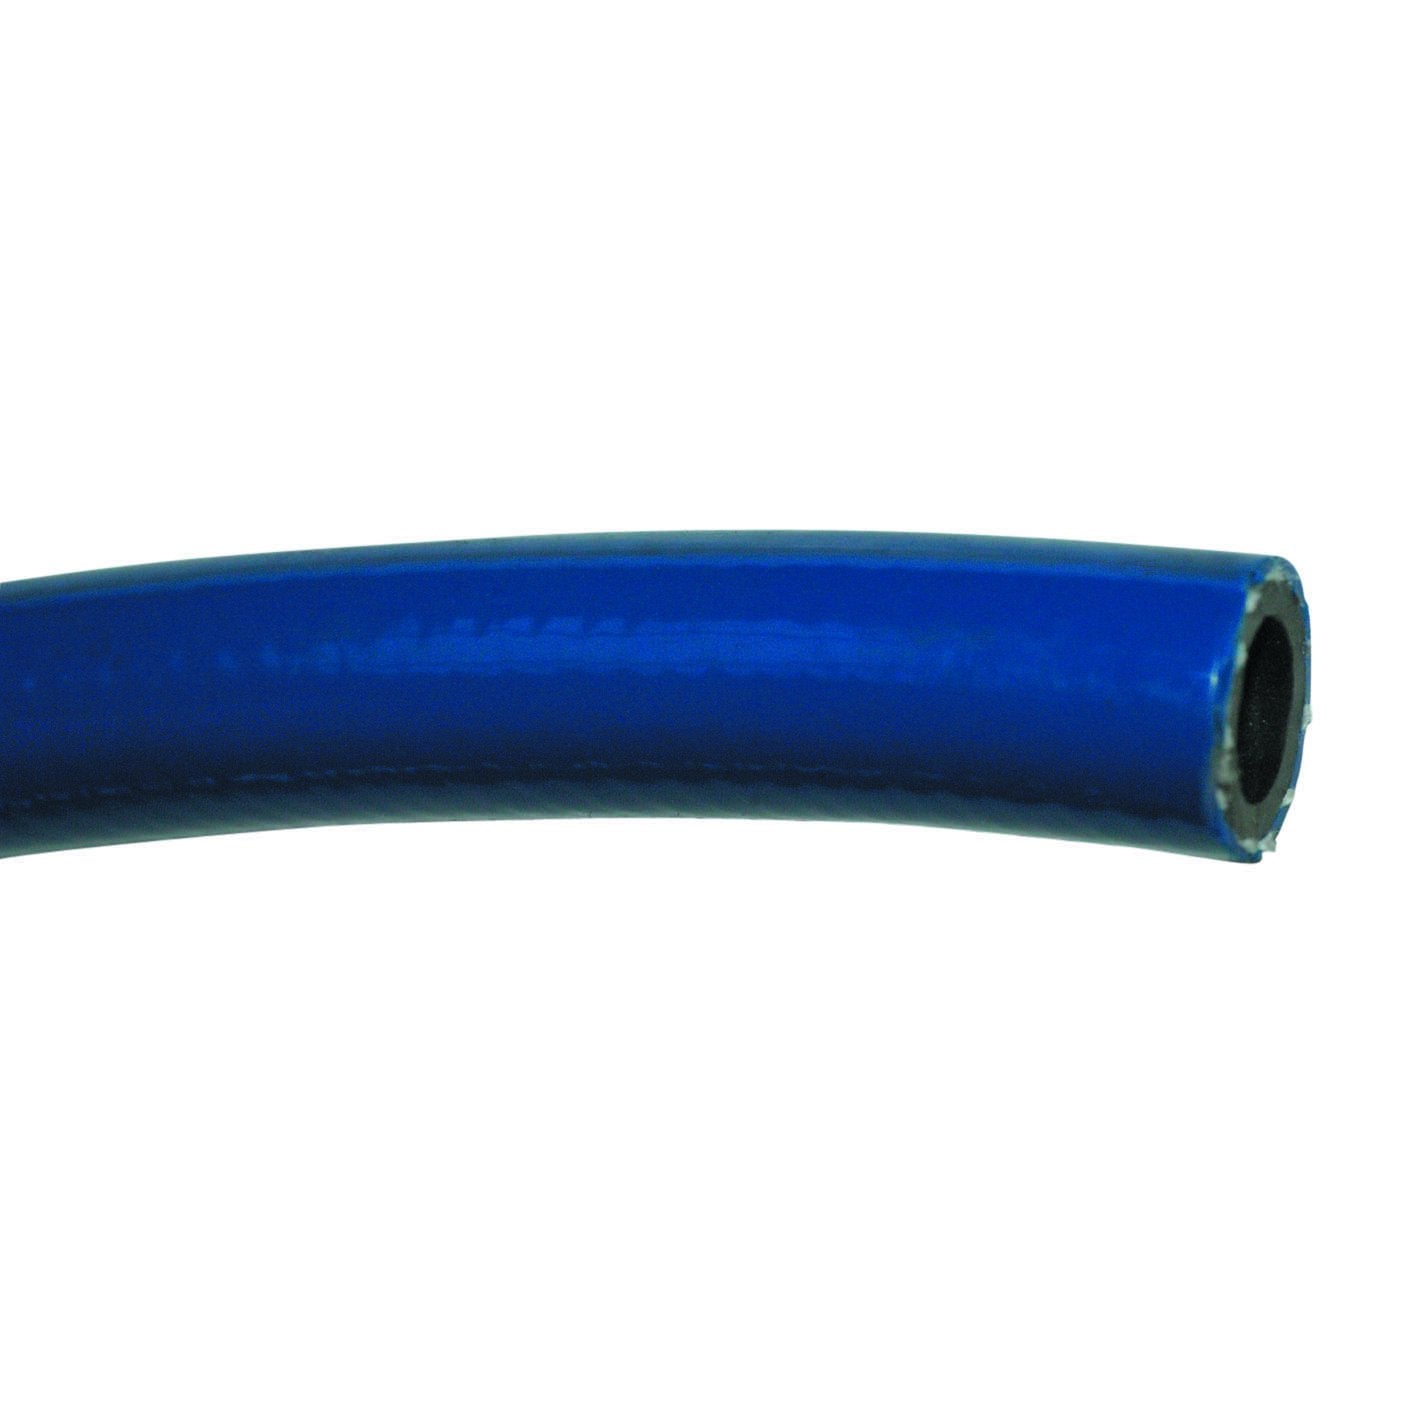 Blue PVC hose